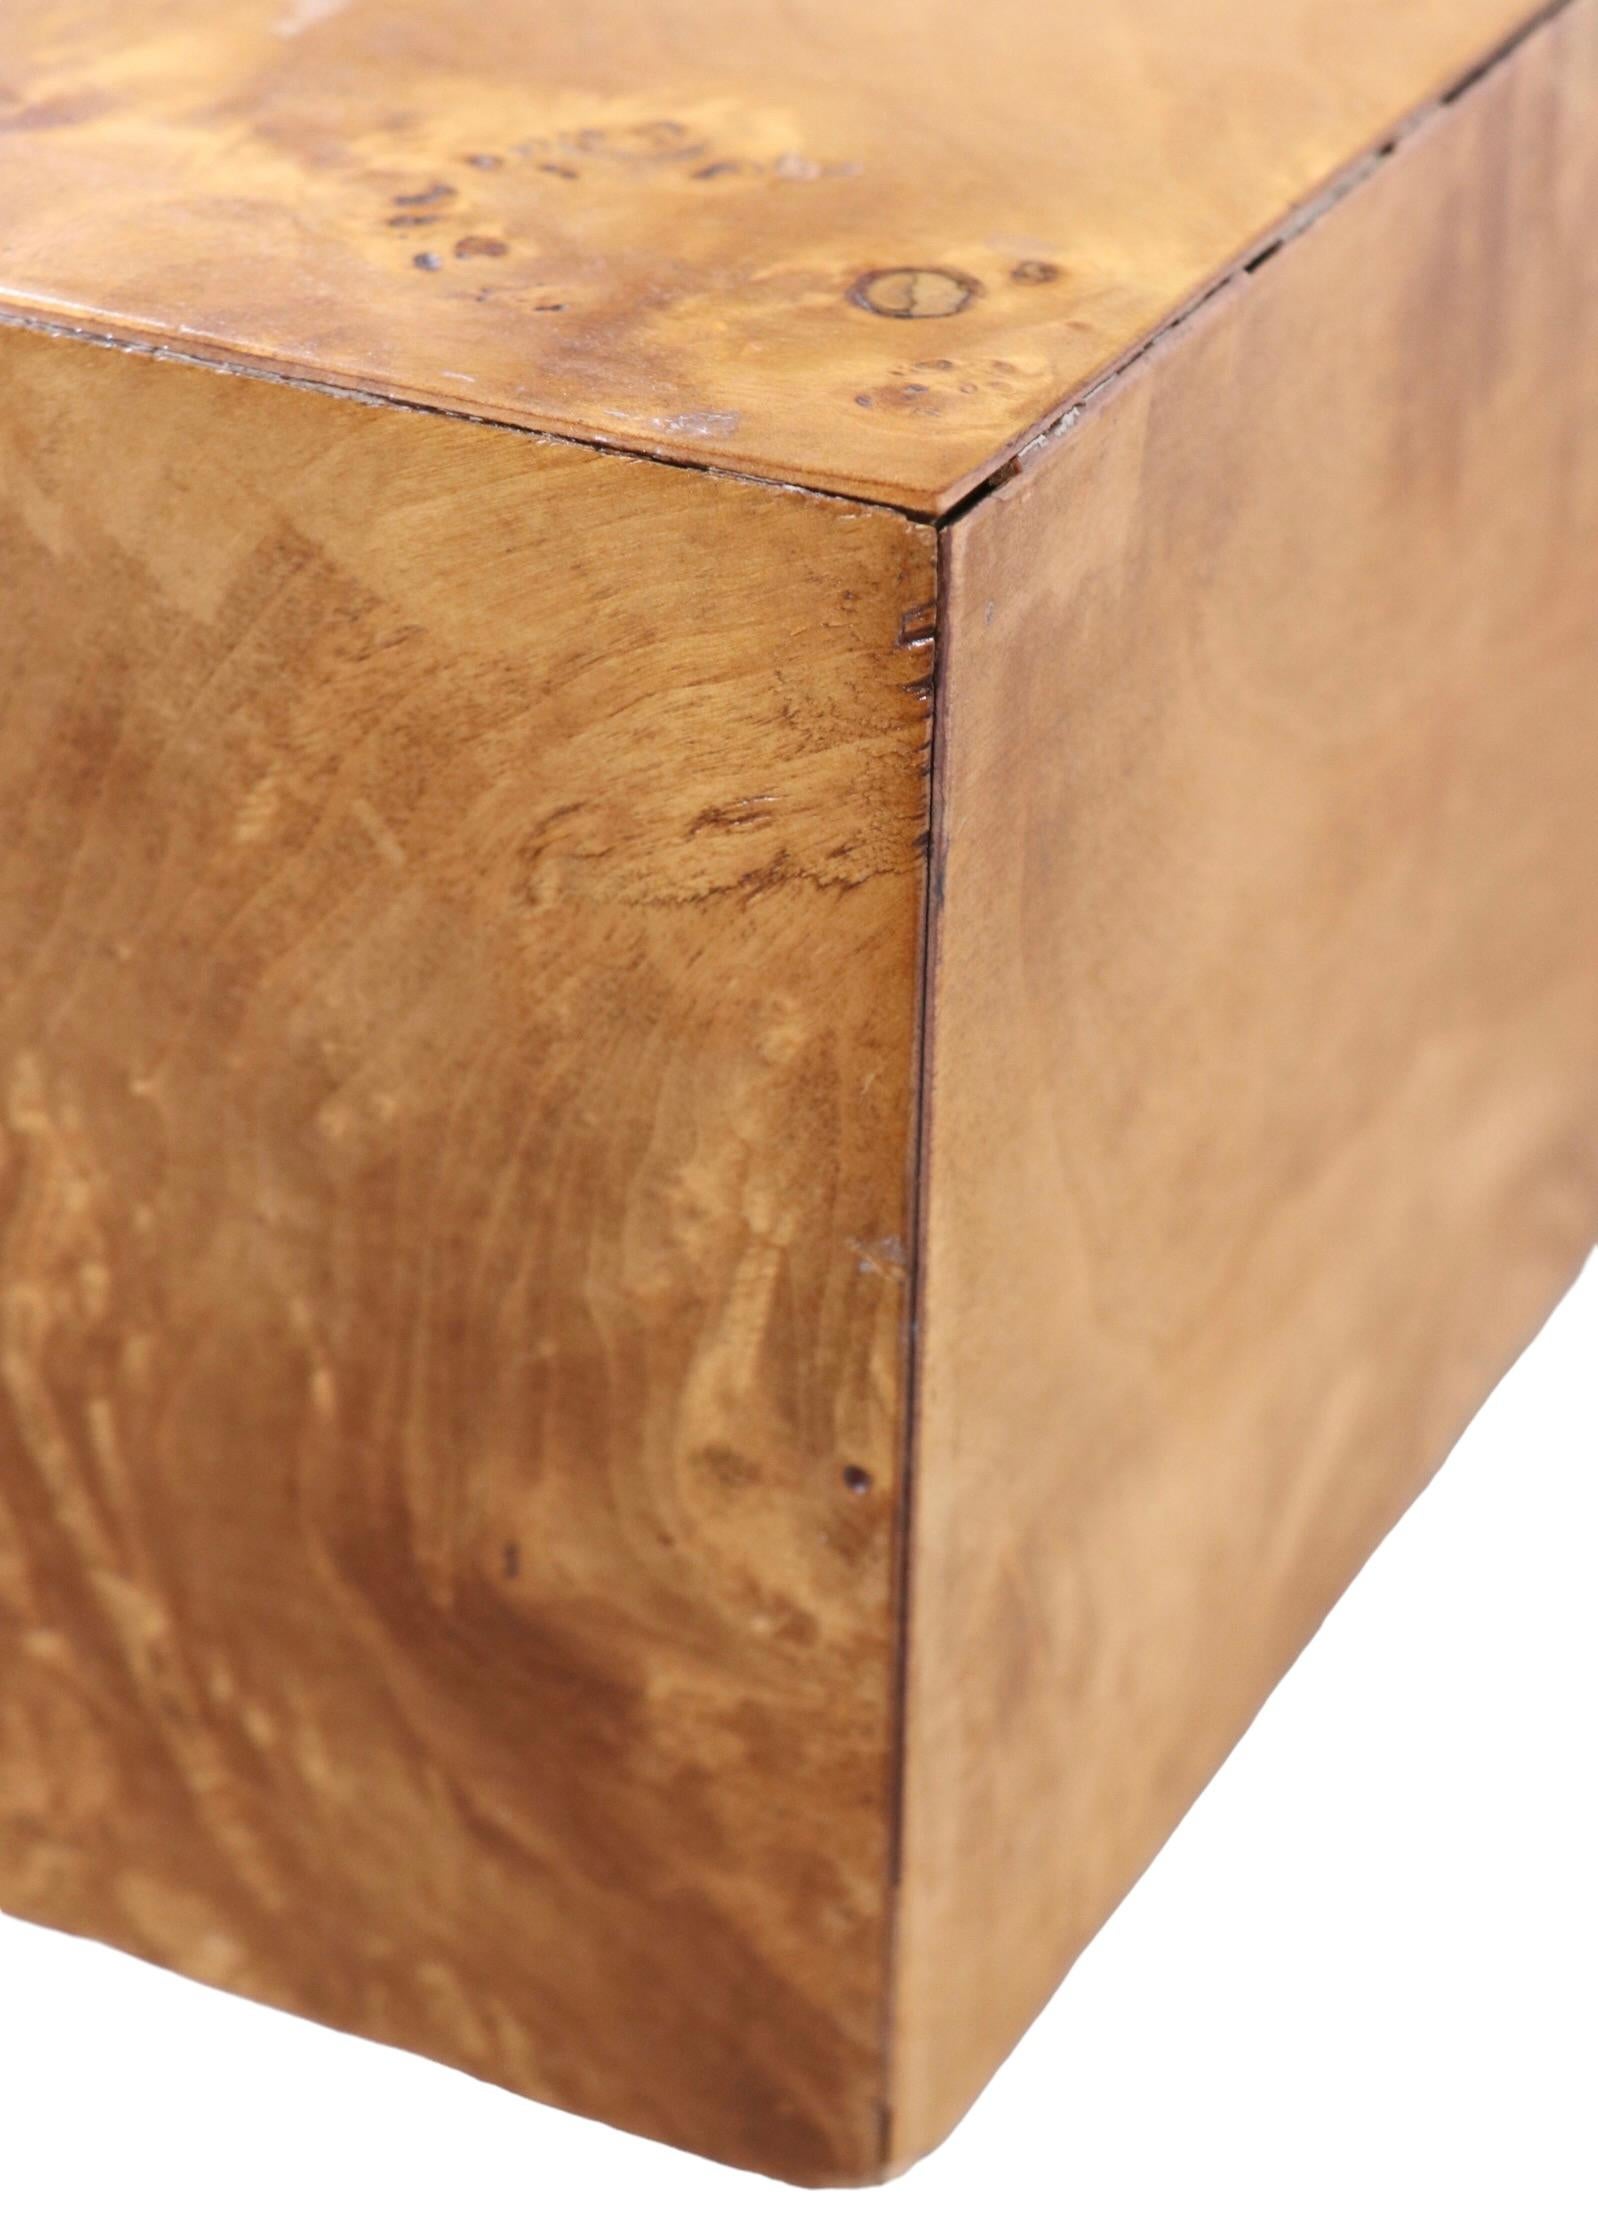 Exceptionnelle table basse en ronce et chrome attribuée à Milo Baughman. La table présente un plateau en ronce blonde avec incrustation géométrique chromée, qui repose sur un socle chromé brillant. La partie supérieure est carrée et a une épaisseur